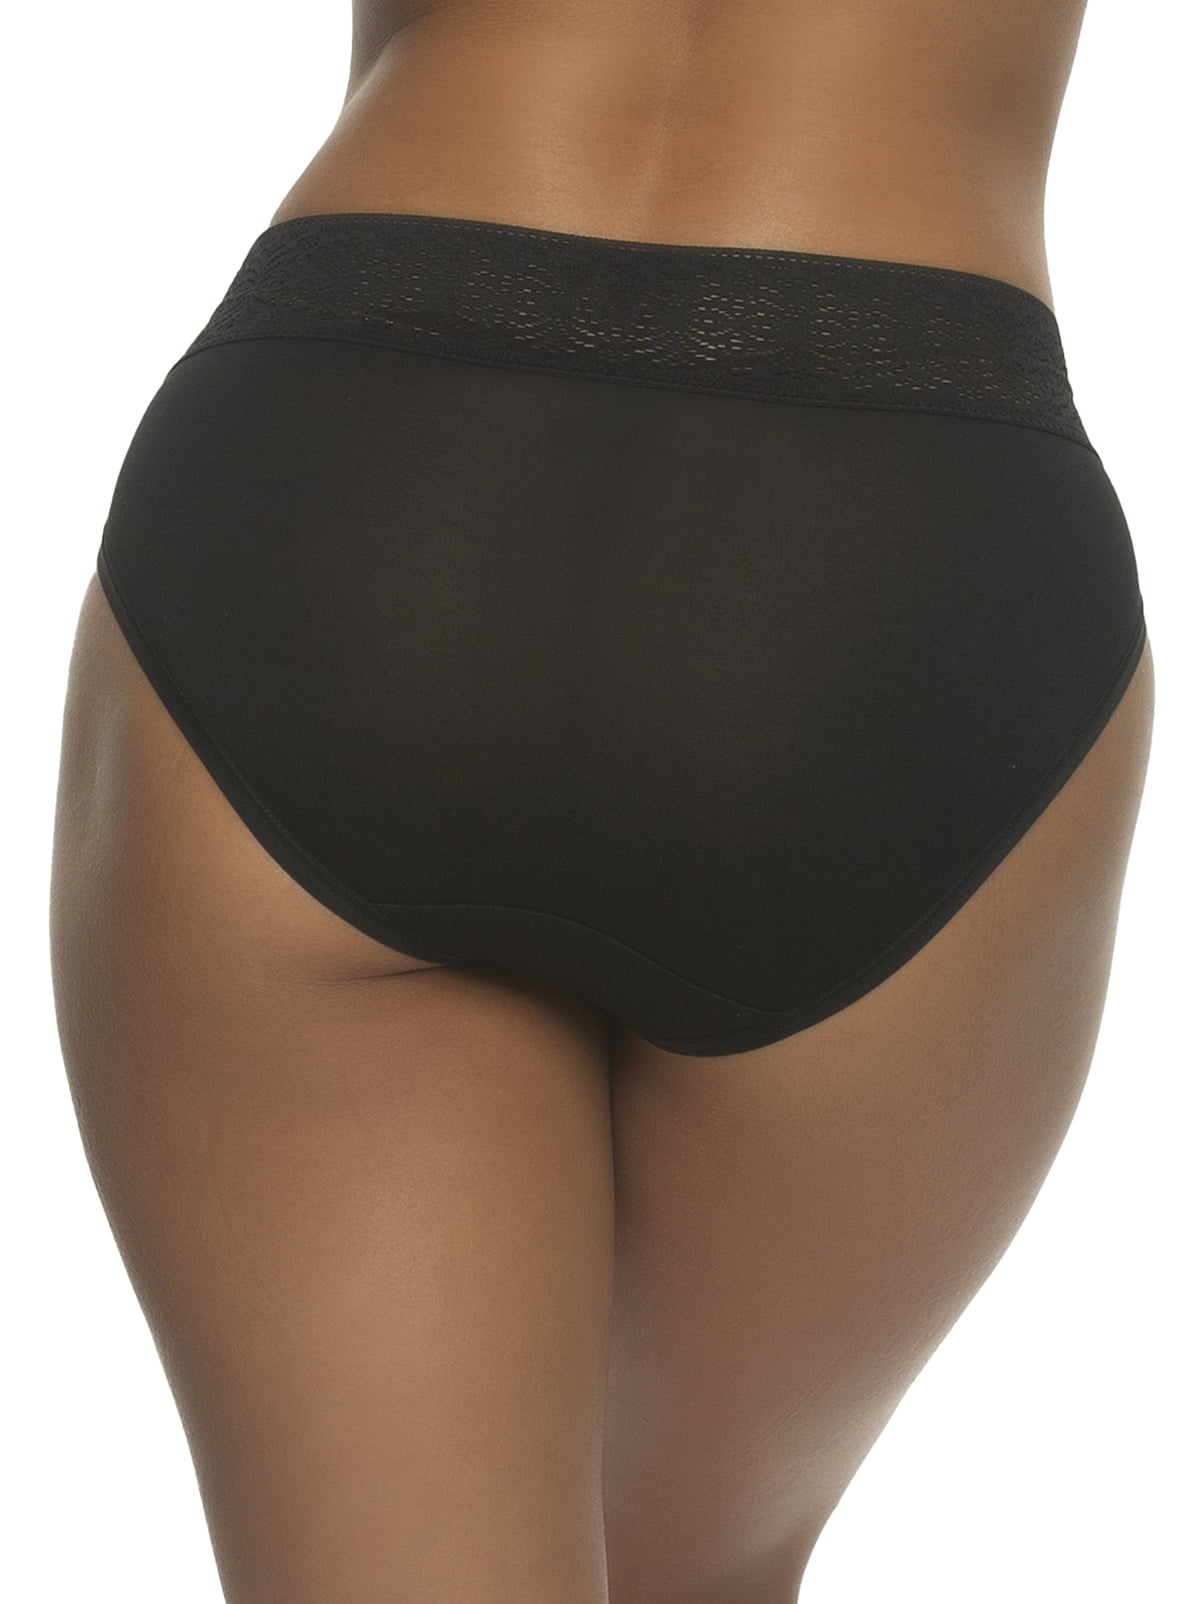 Serene Modal & Lace Hi Cut Panty | Felina | Women's Underwear (Black, Large)